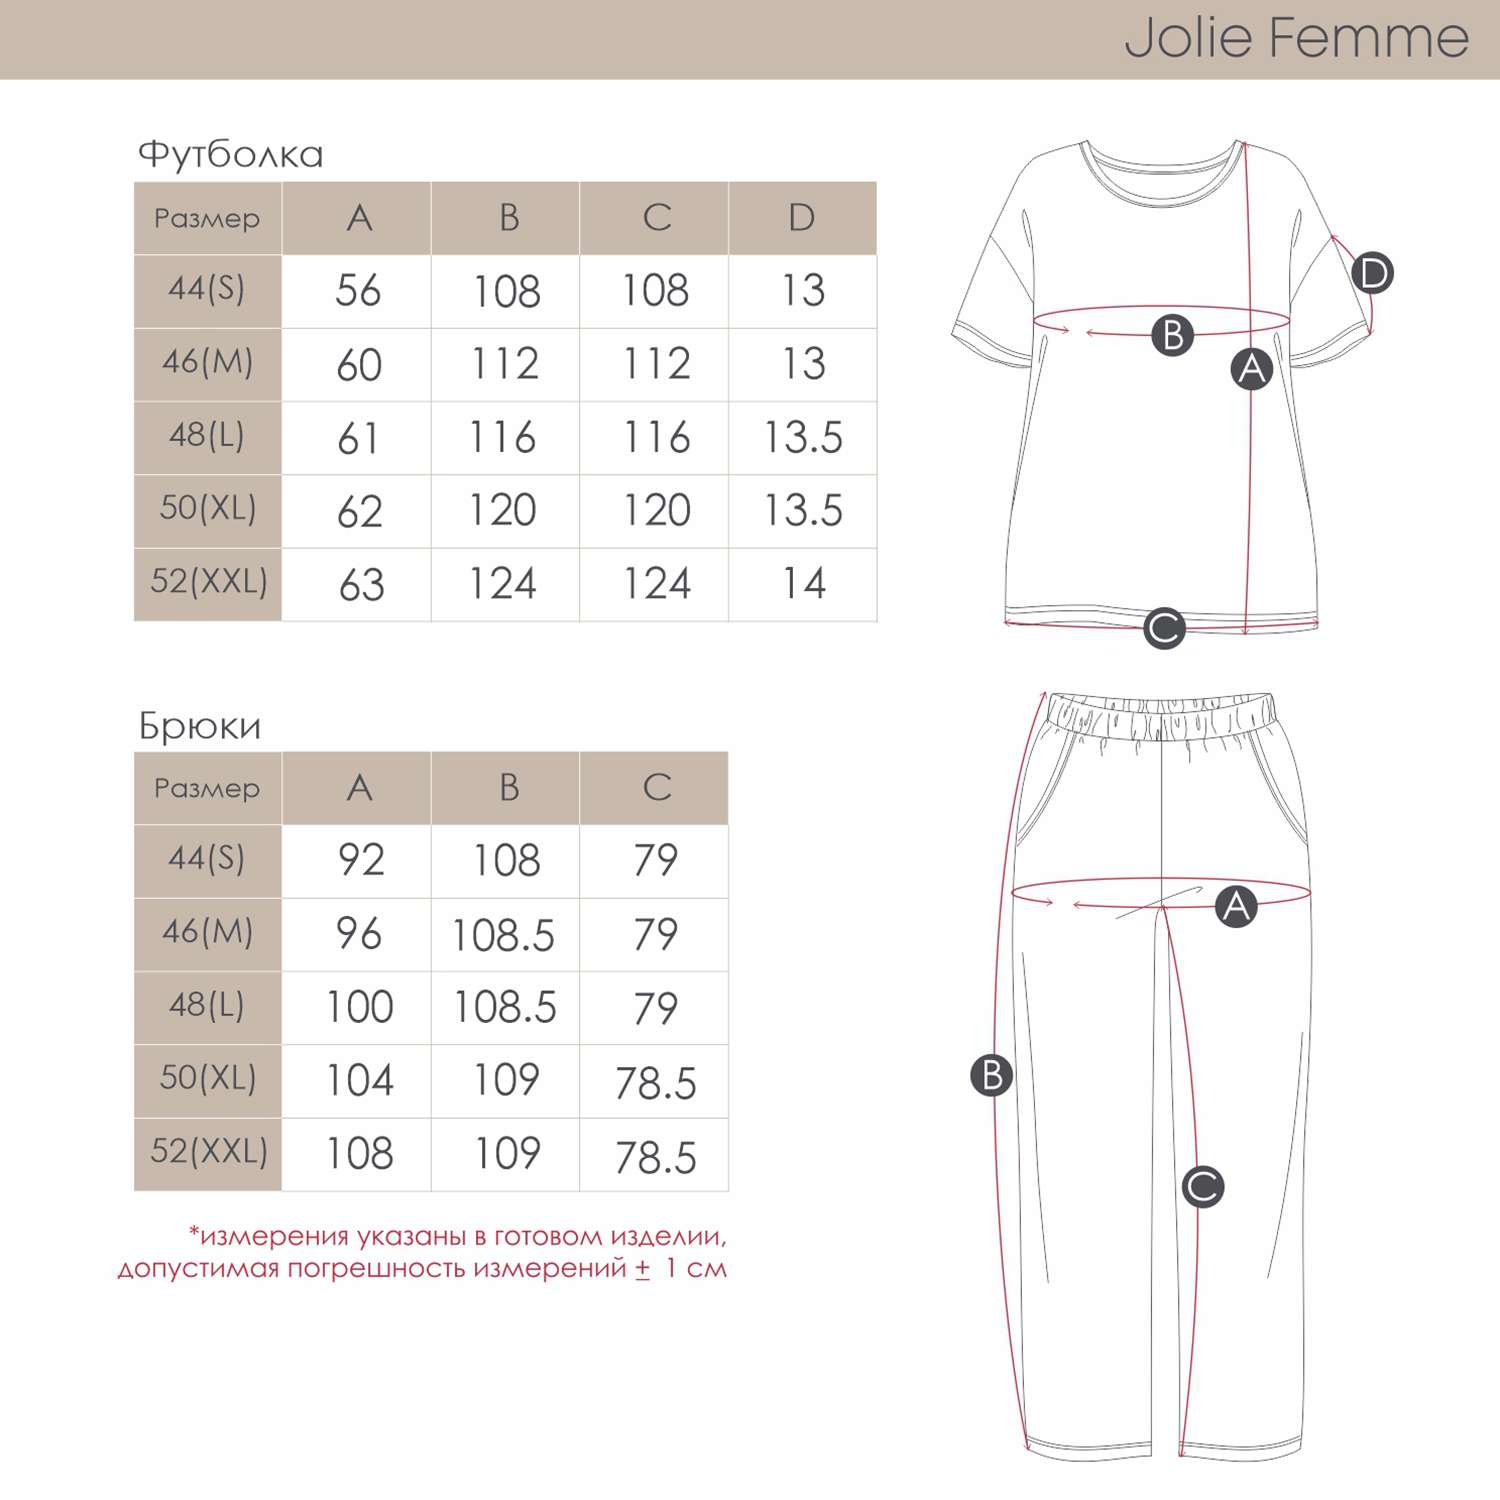 Пижама Jolie Femme J067/036/ав - фото 4